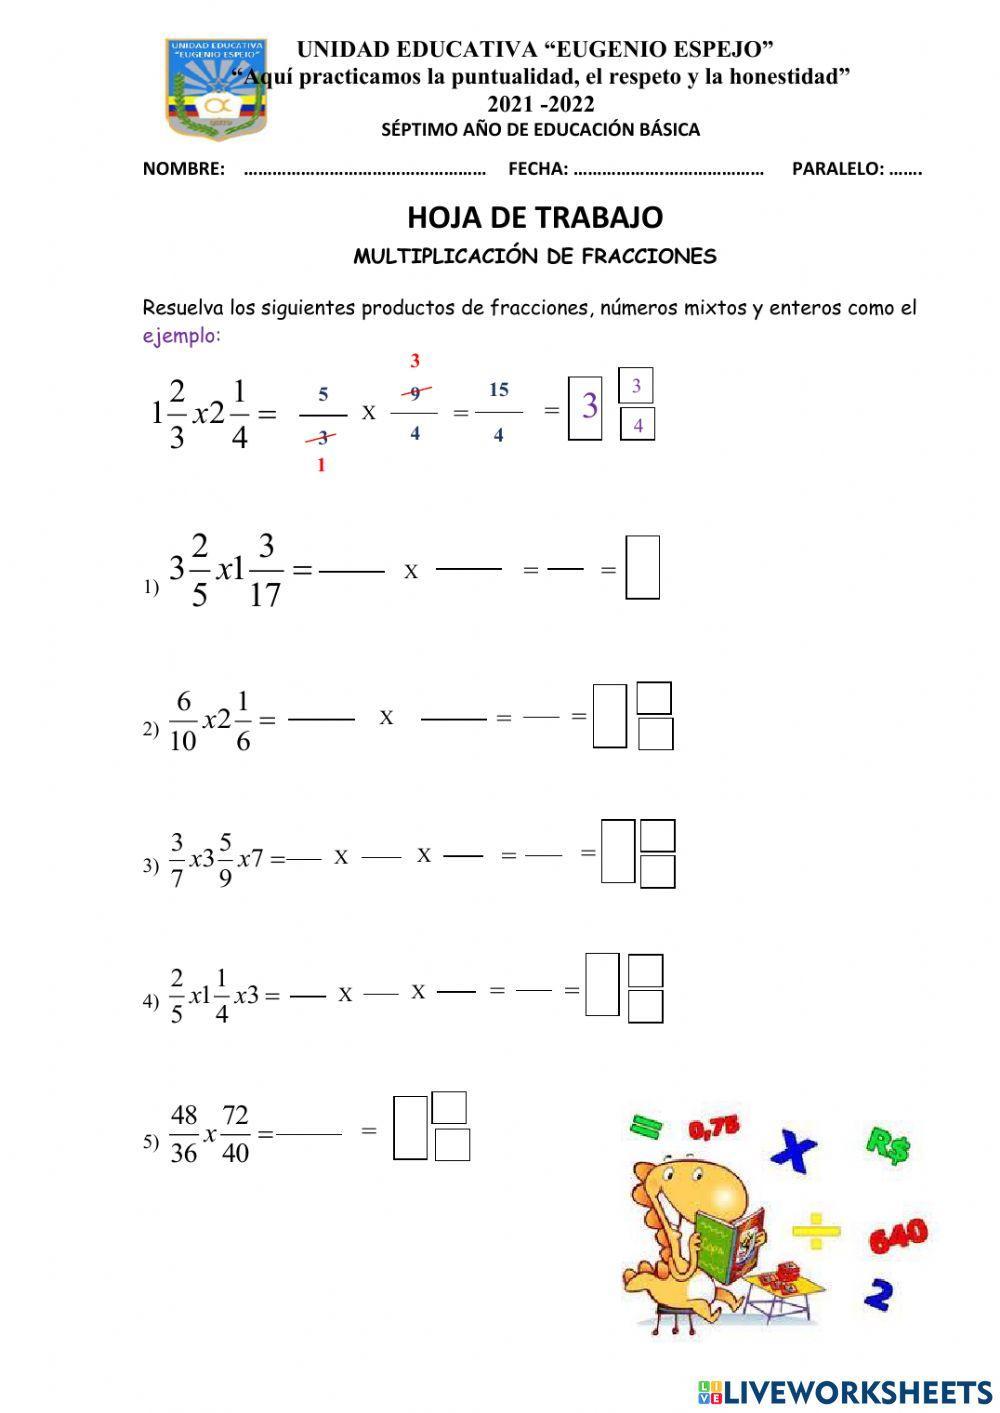 Multiplicación de fracciones, números mixtos y enteros